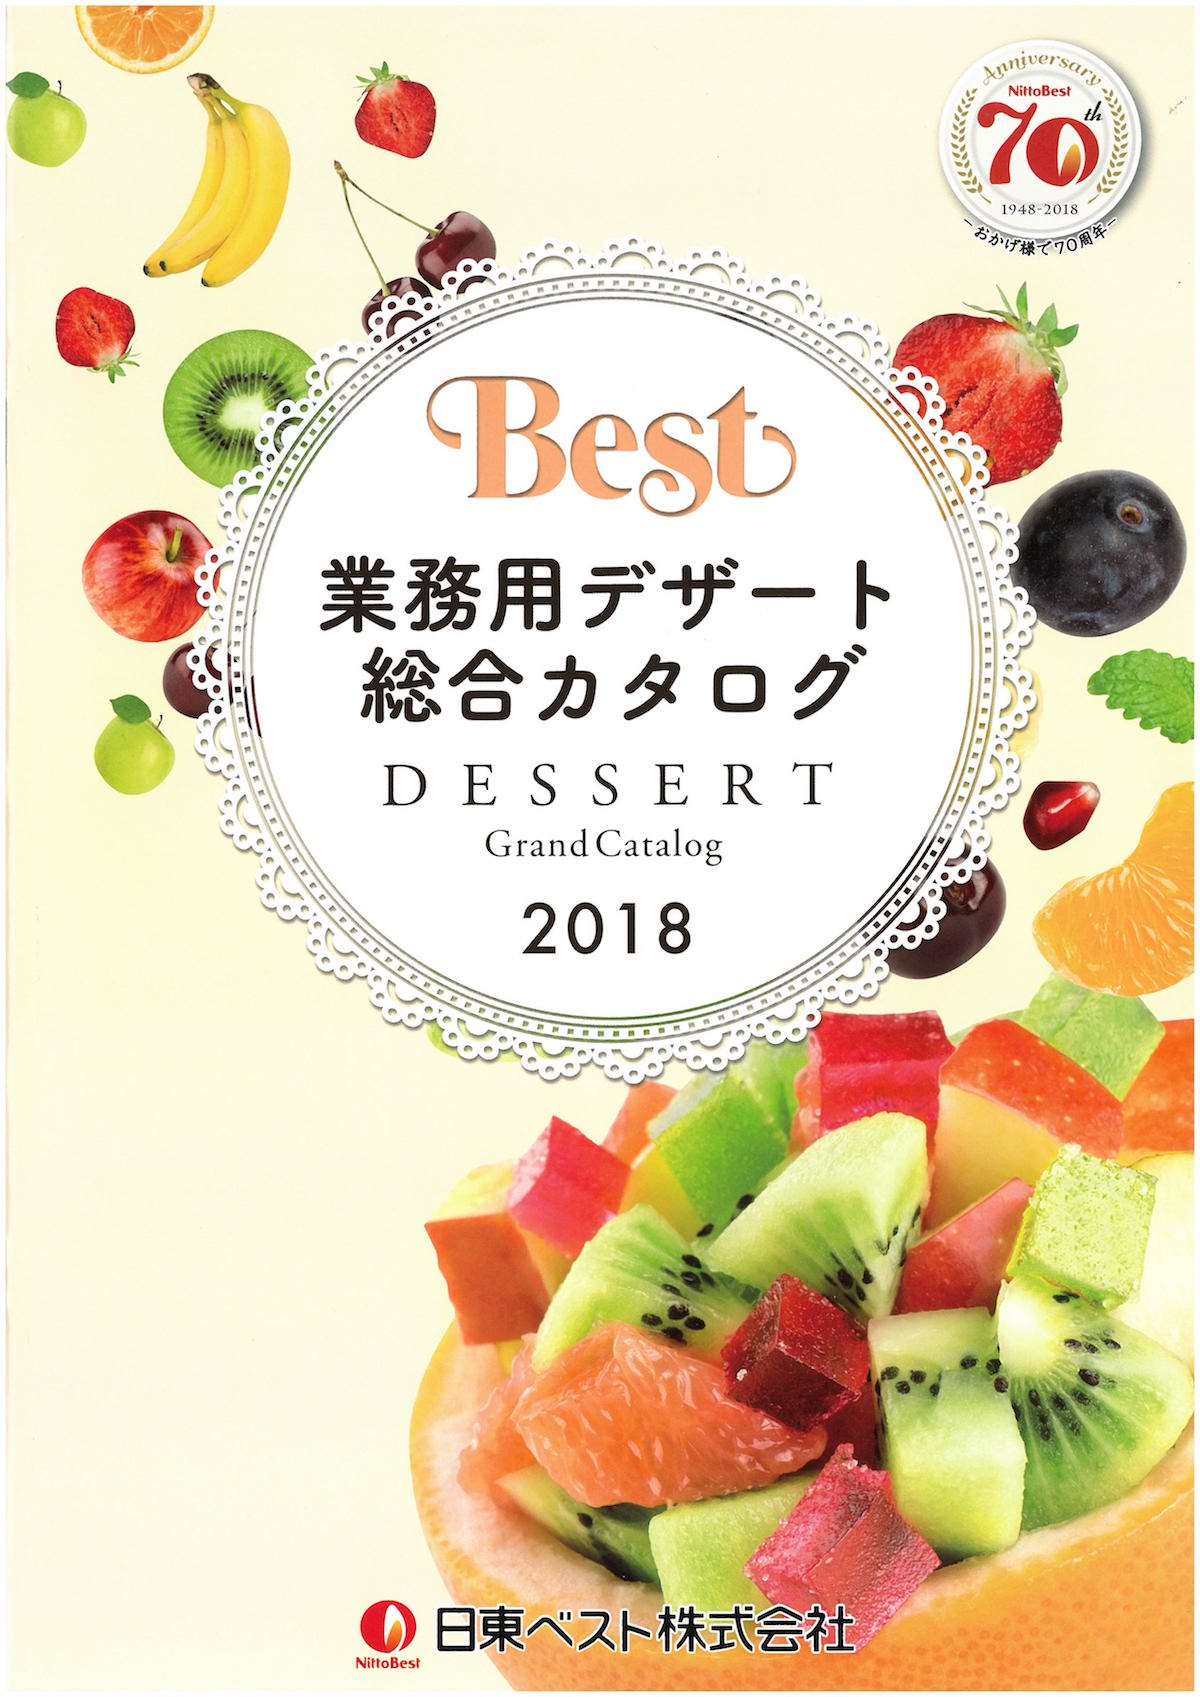 日東ベスト2018業務用デザート総合カタログ